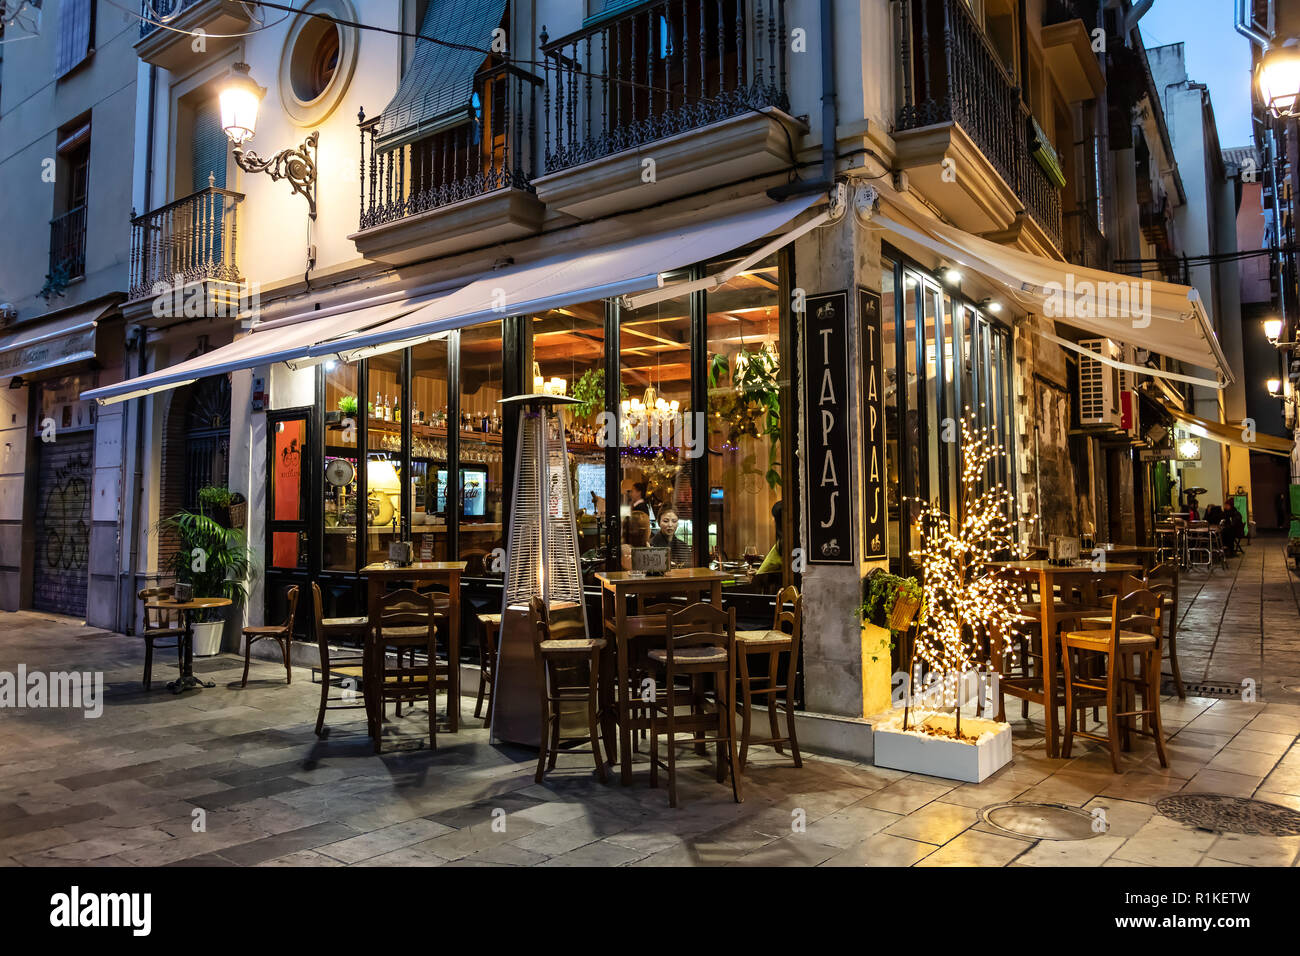 La Bicicleta restaurant, Granada, Province of Granada, Andalusia, Spain  Stock Photo - Alamy